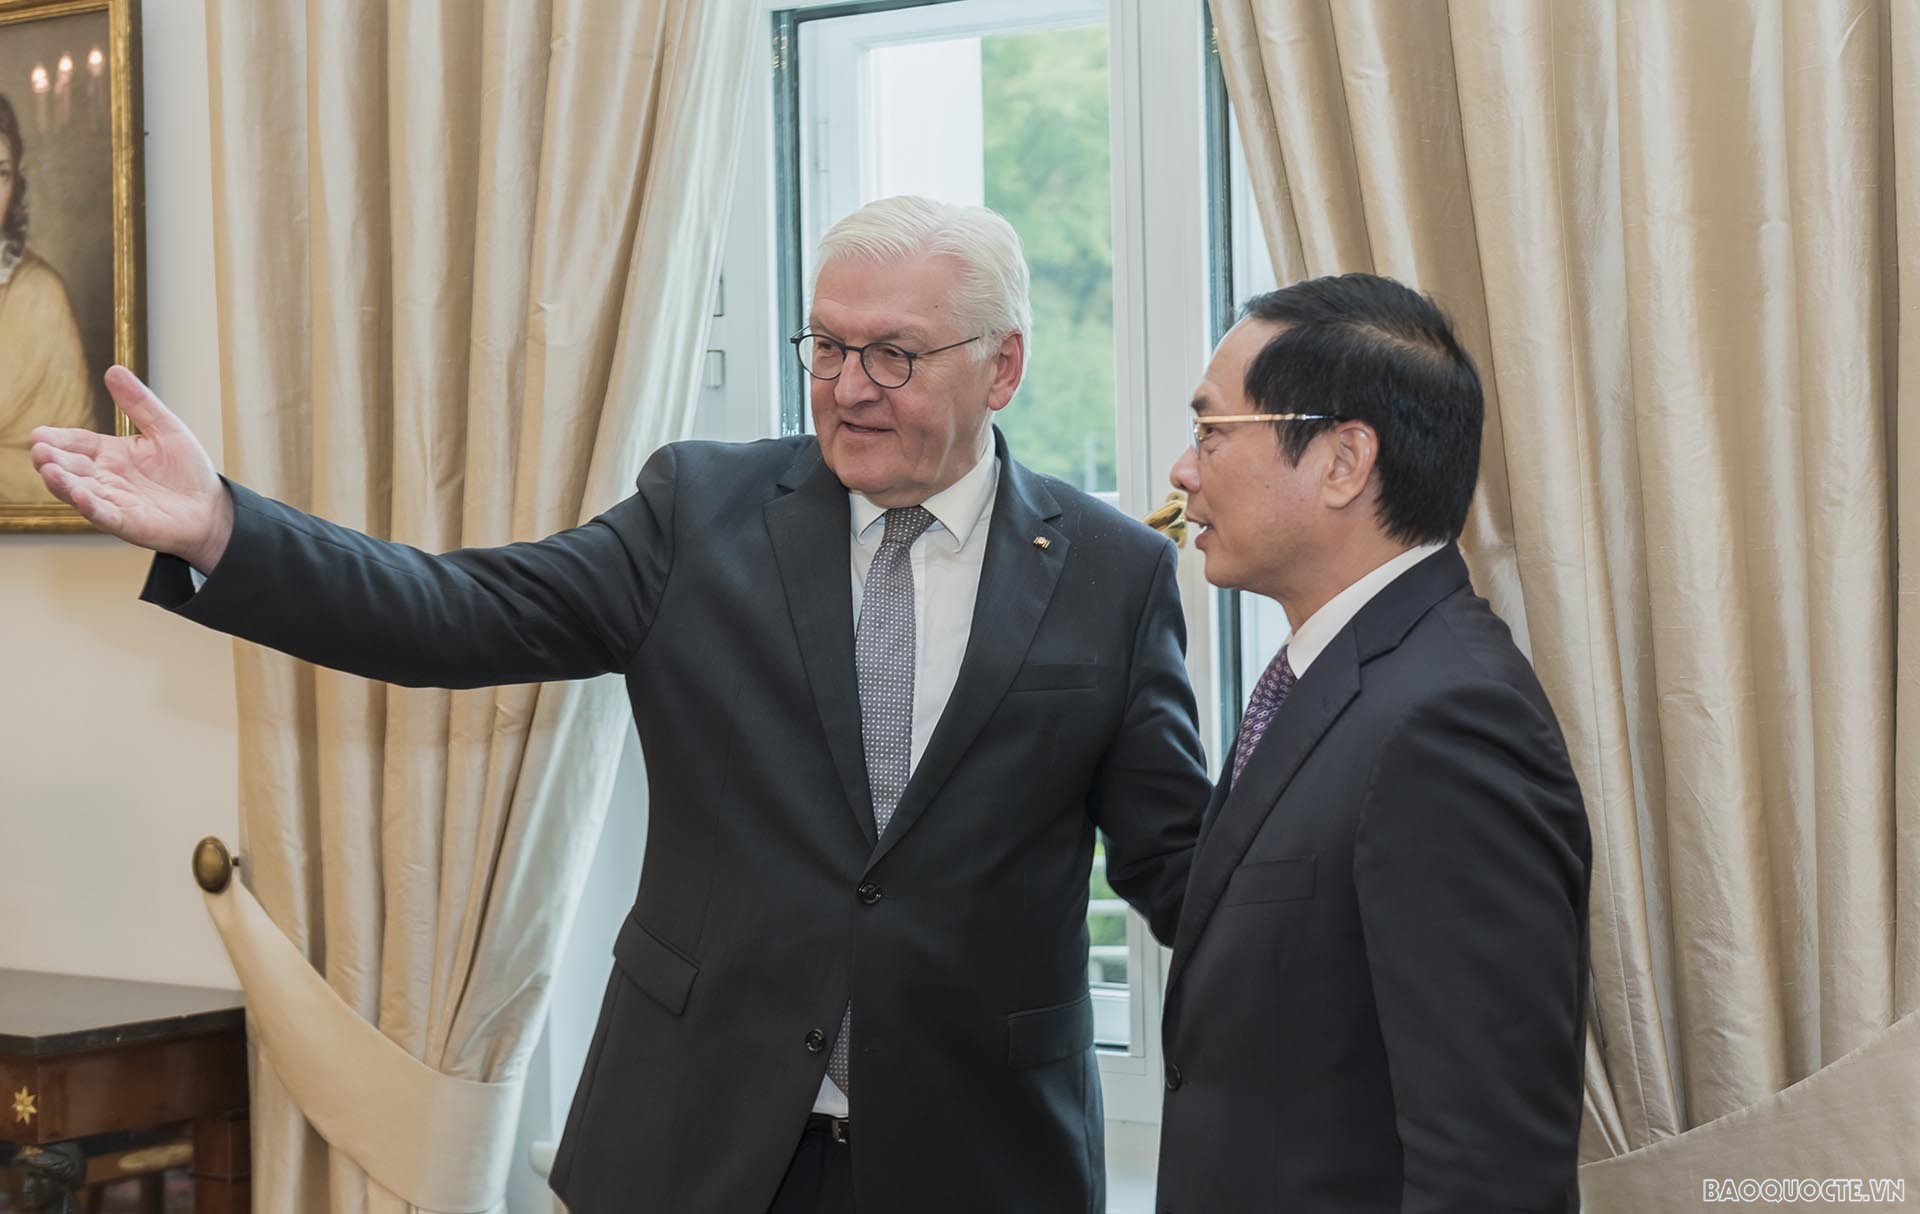 Bộ trưởng Ngoại giao Bùi Thanh Sơn chào xã giao Tổng thống Đức Frank-Walter Steinmeier.